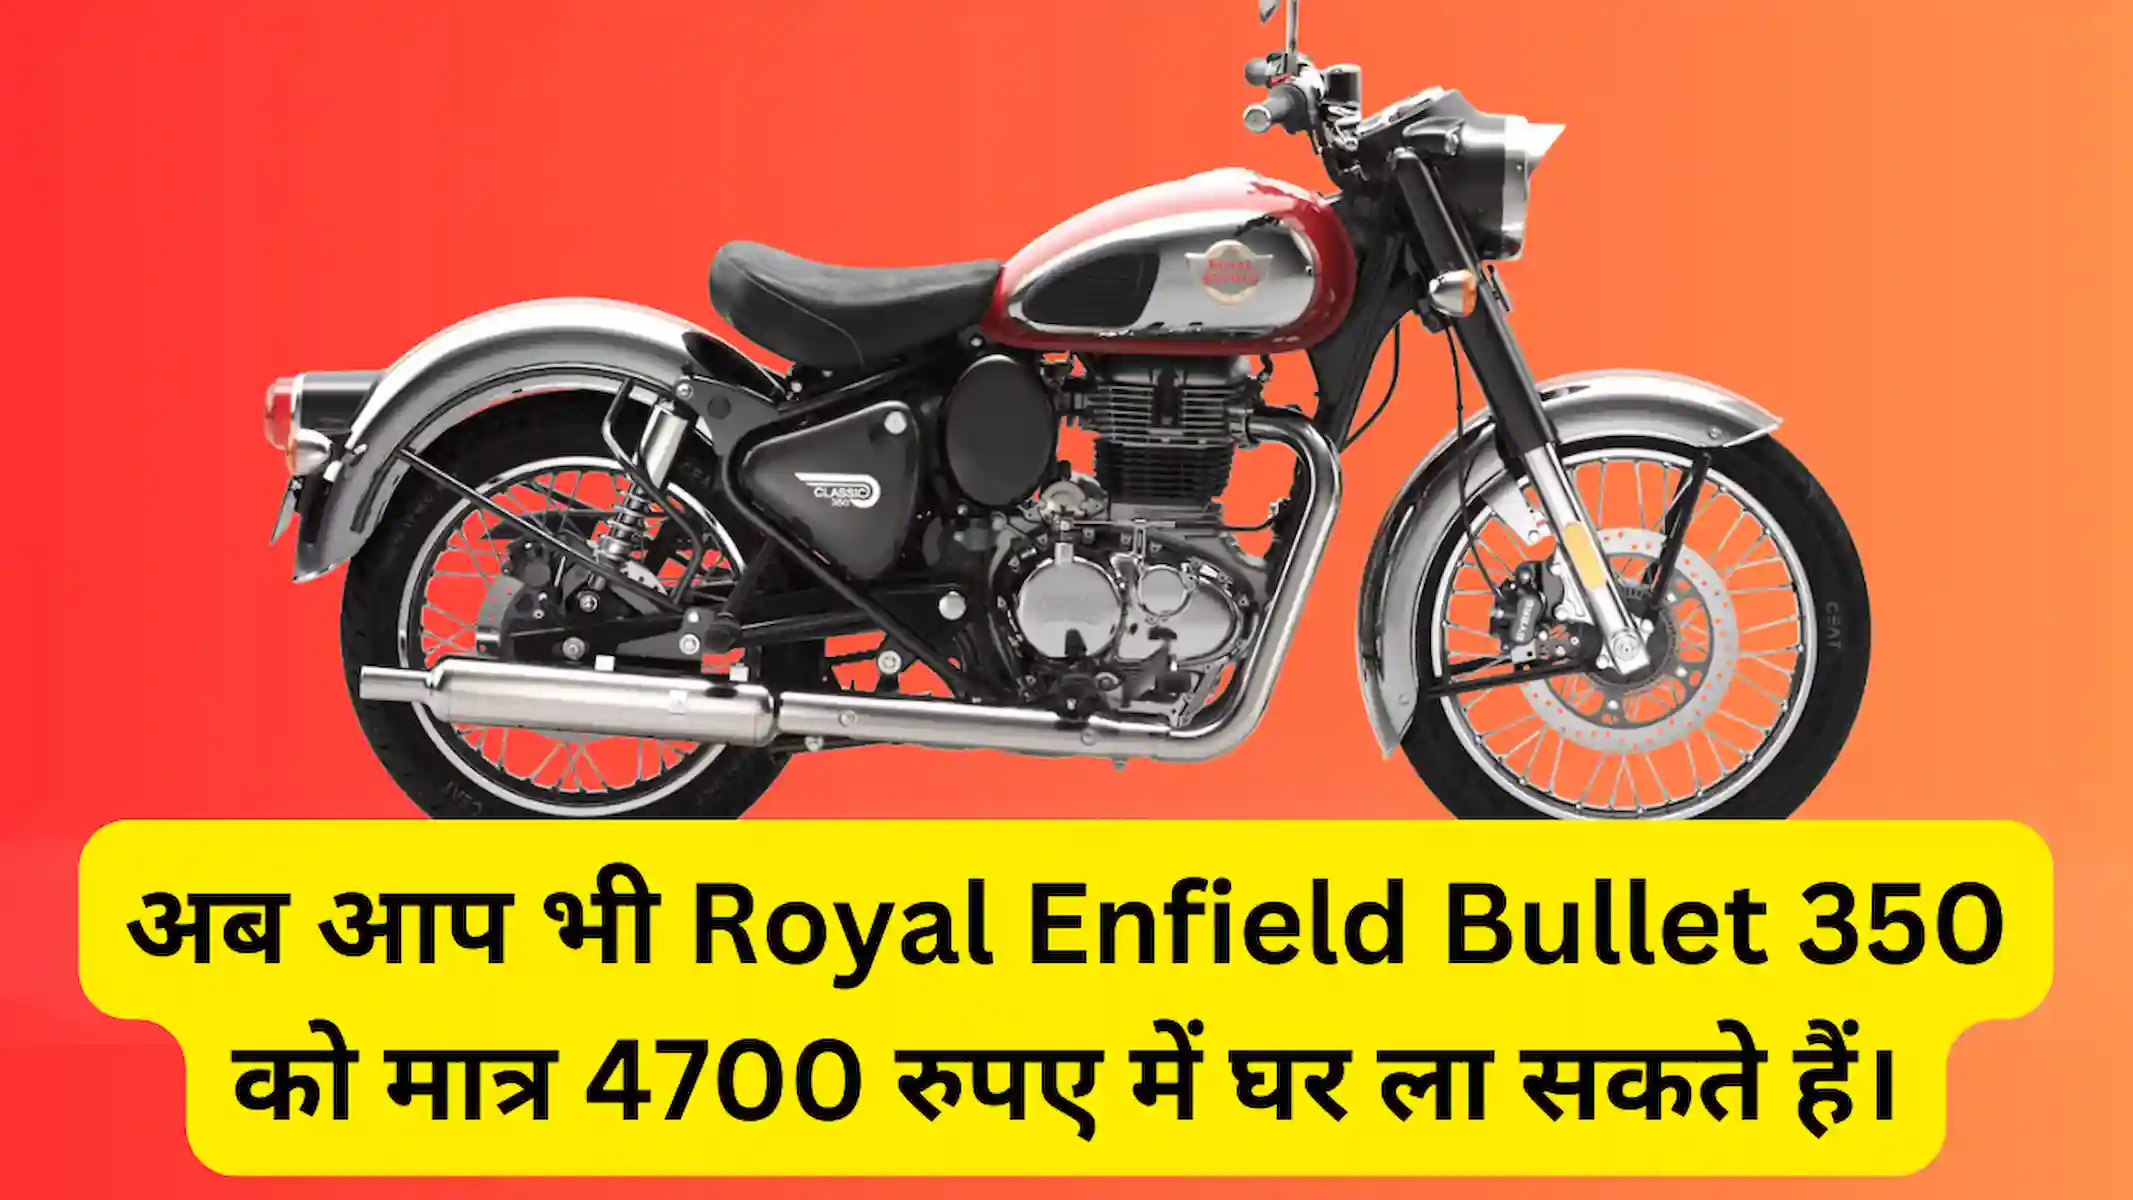 अब आप भी Royal Enfield Bullet 350 को मात्र 4700 रुपए में घर ला सकते